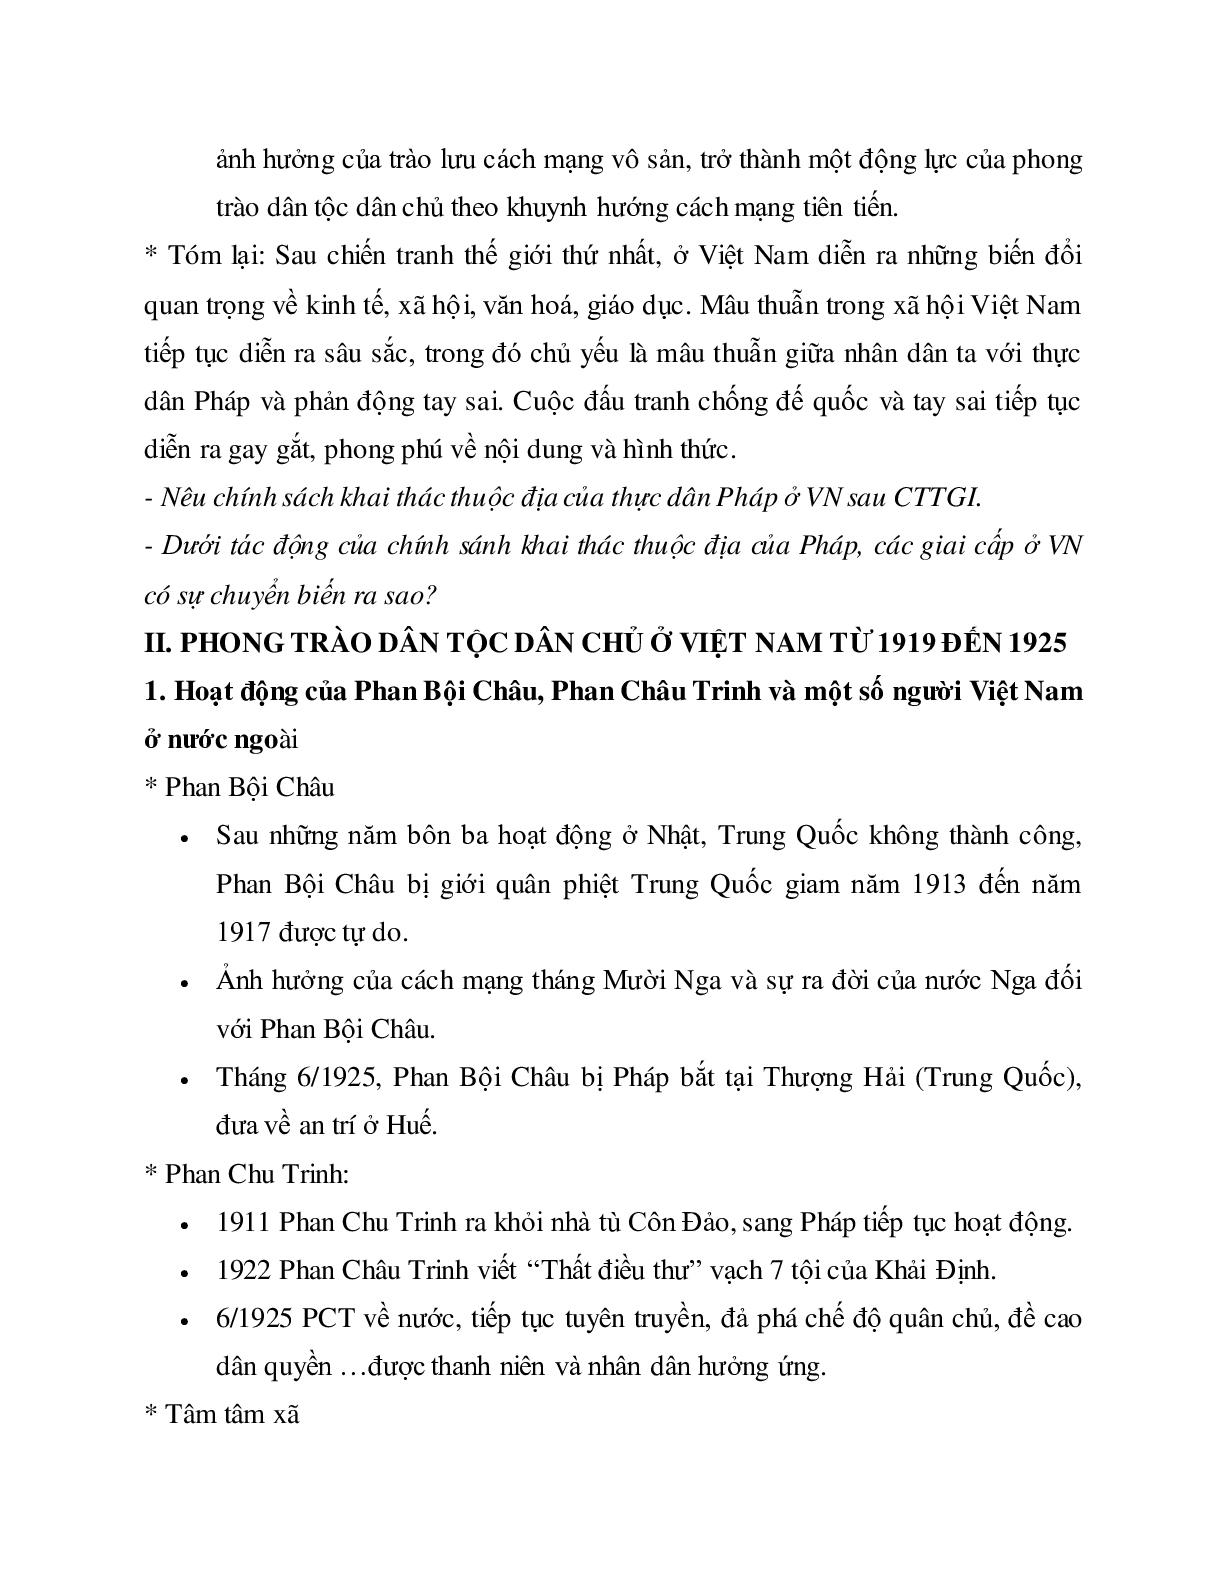 Lý thuyết môn Lịch sử 12: bài 12 - Phong trào dân tộc dân chủ ở Việt Nam từ năm 1919 đến năm 1925 mới nhất (trang 5)